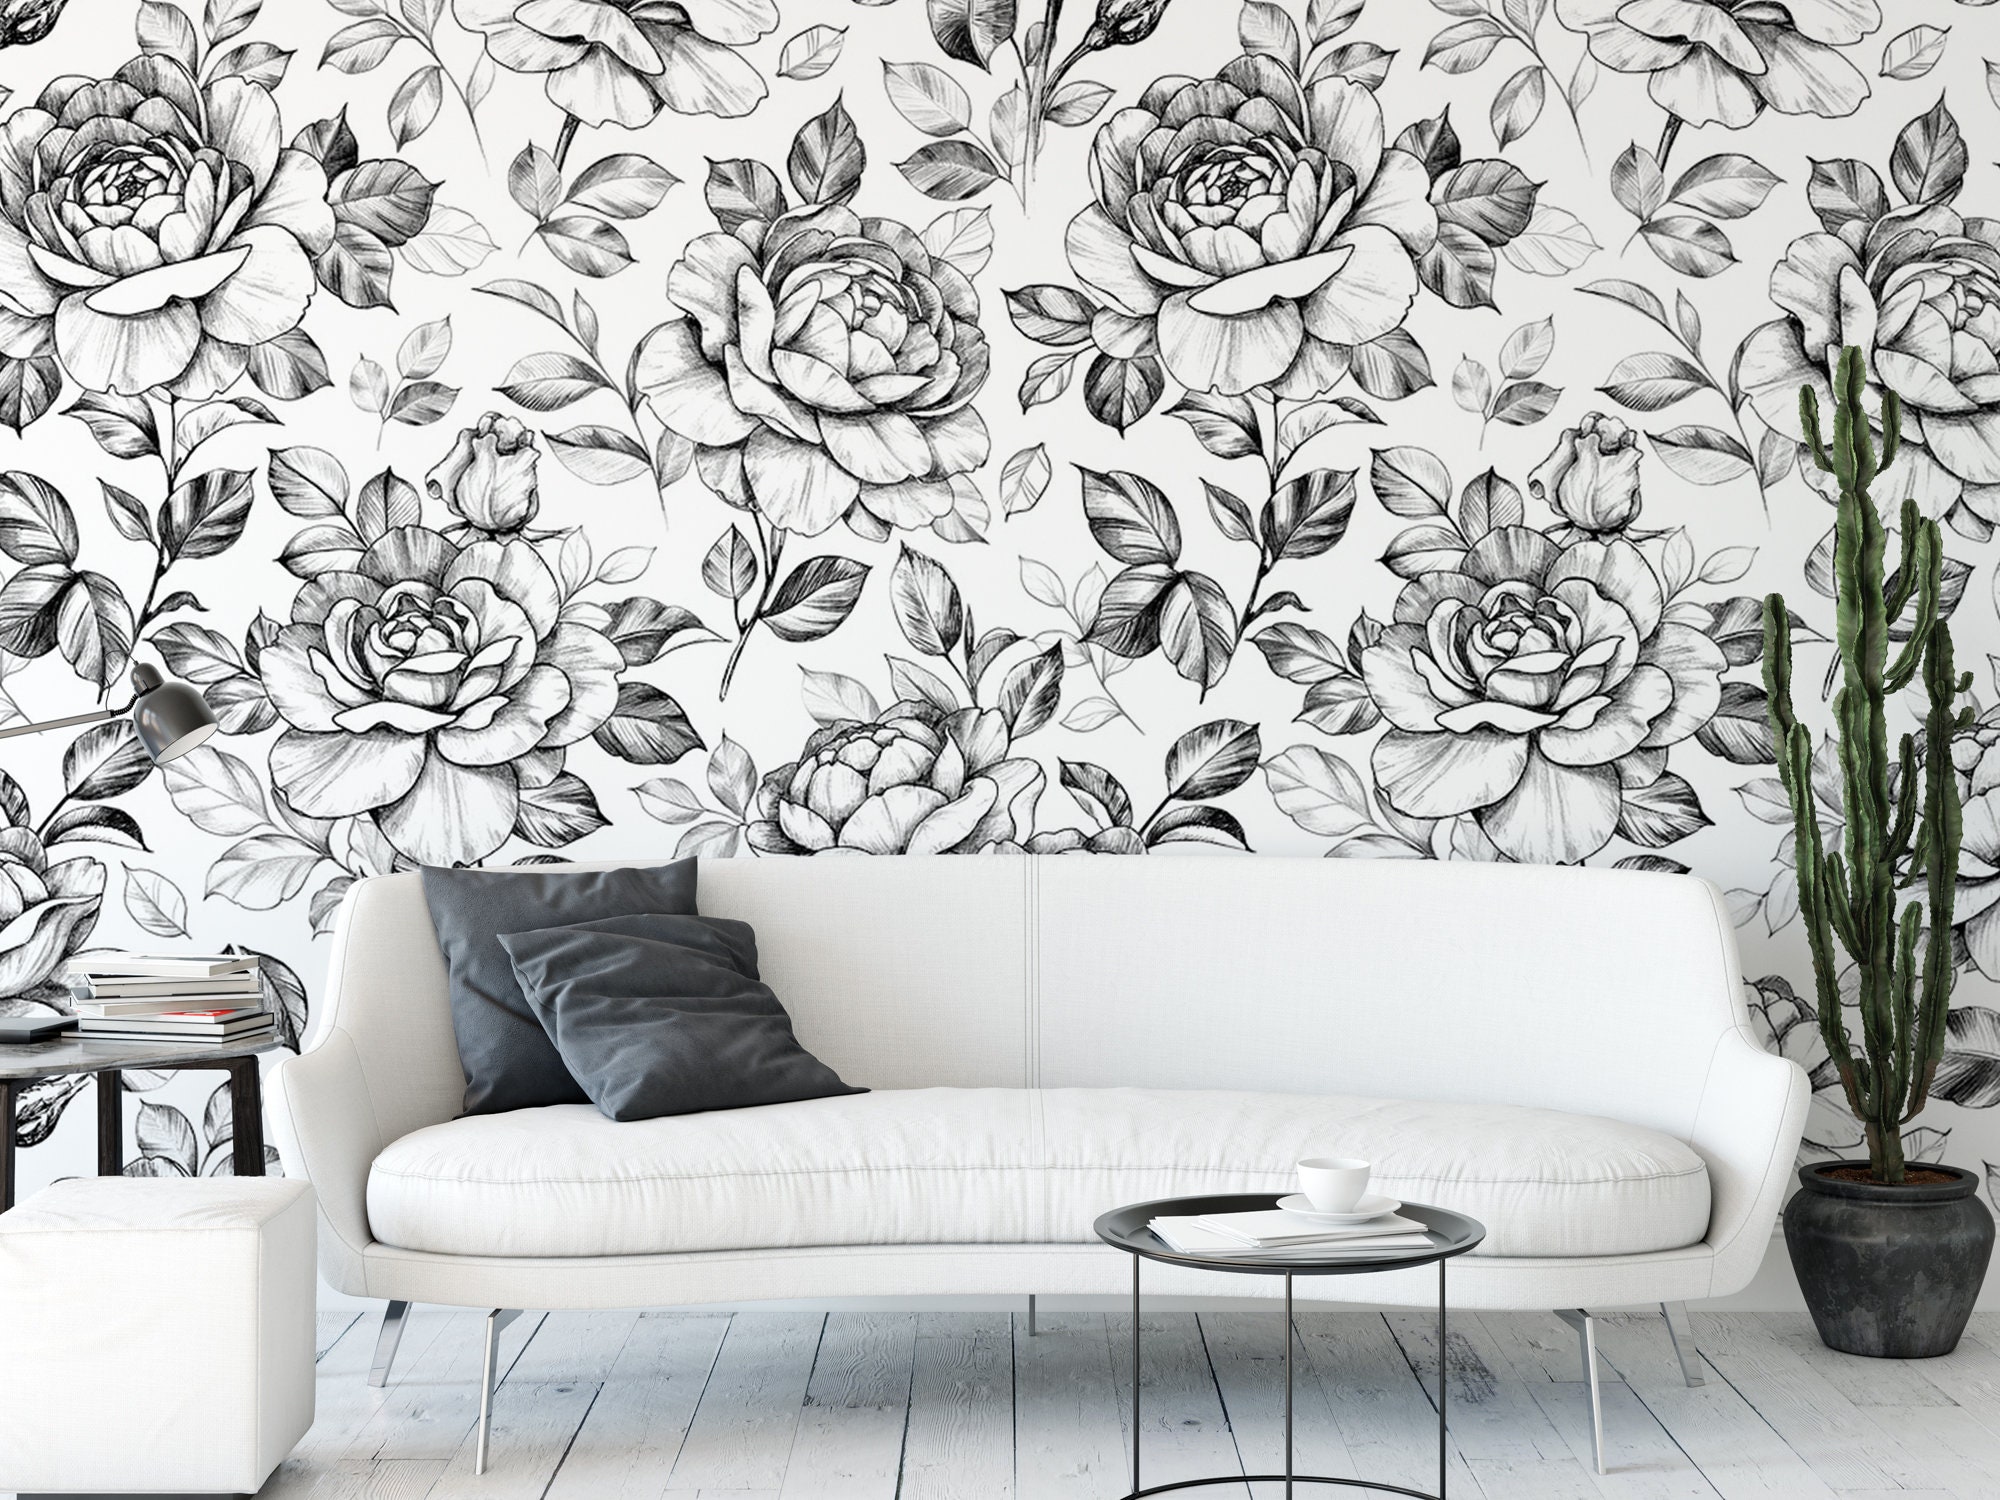 black rose pattern wallpaper